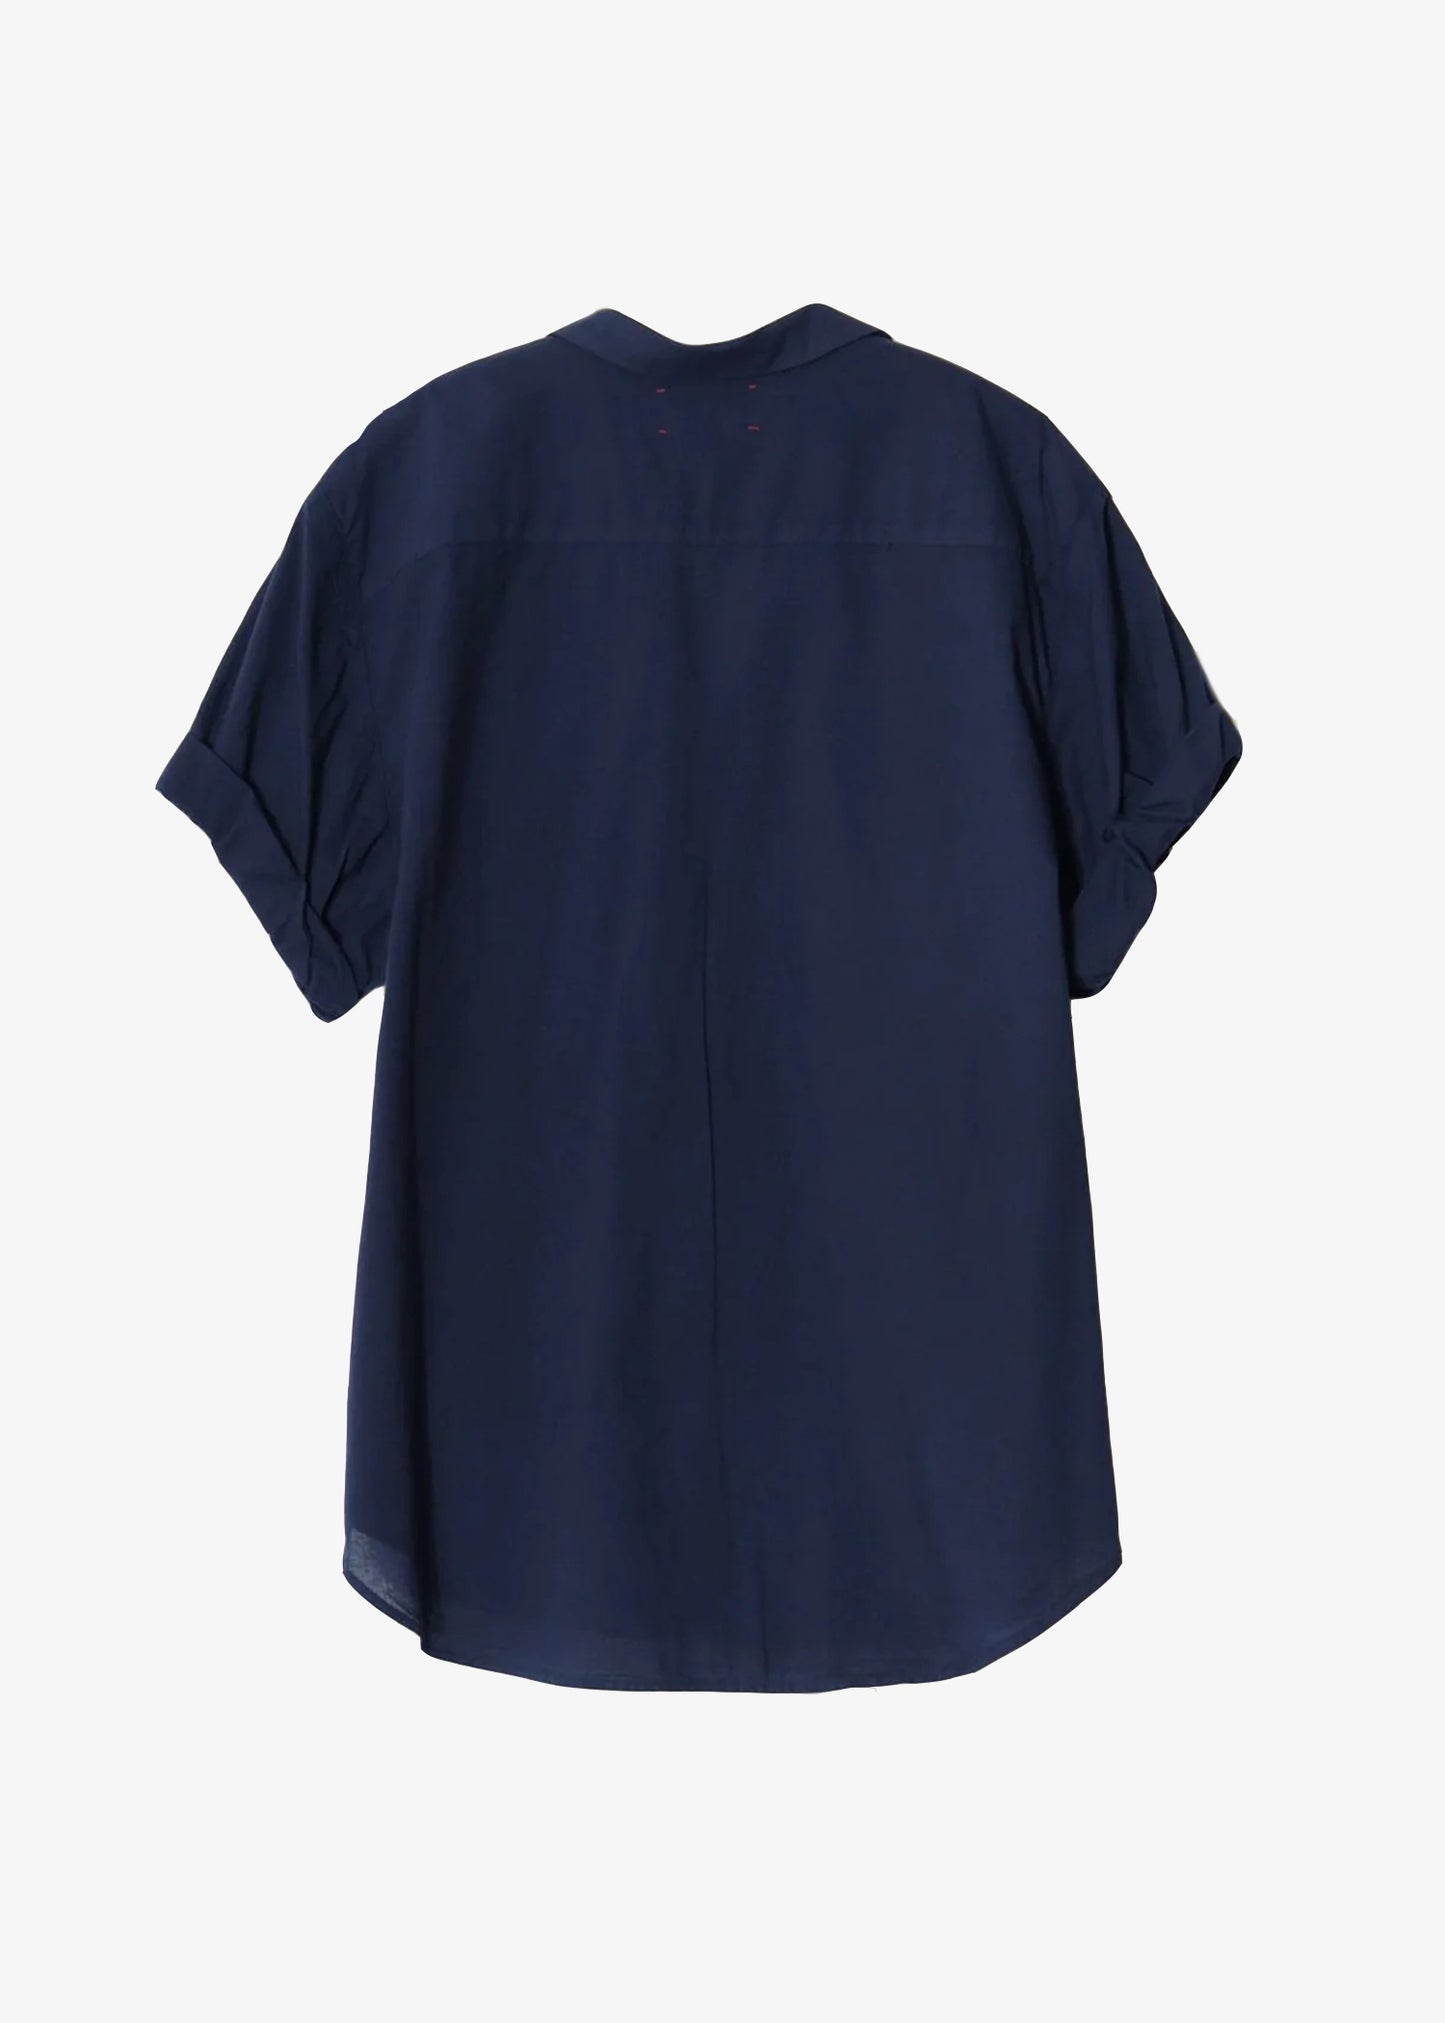 Xirena-channing-shirt-navy